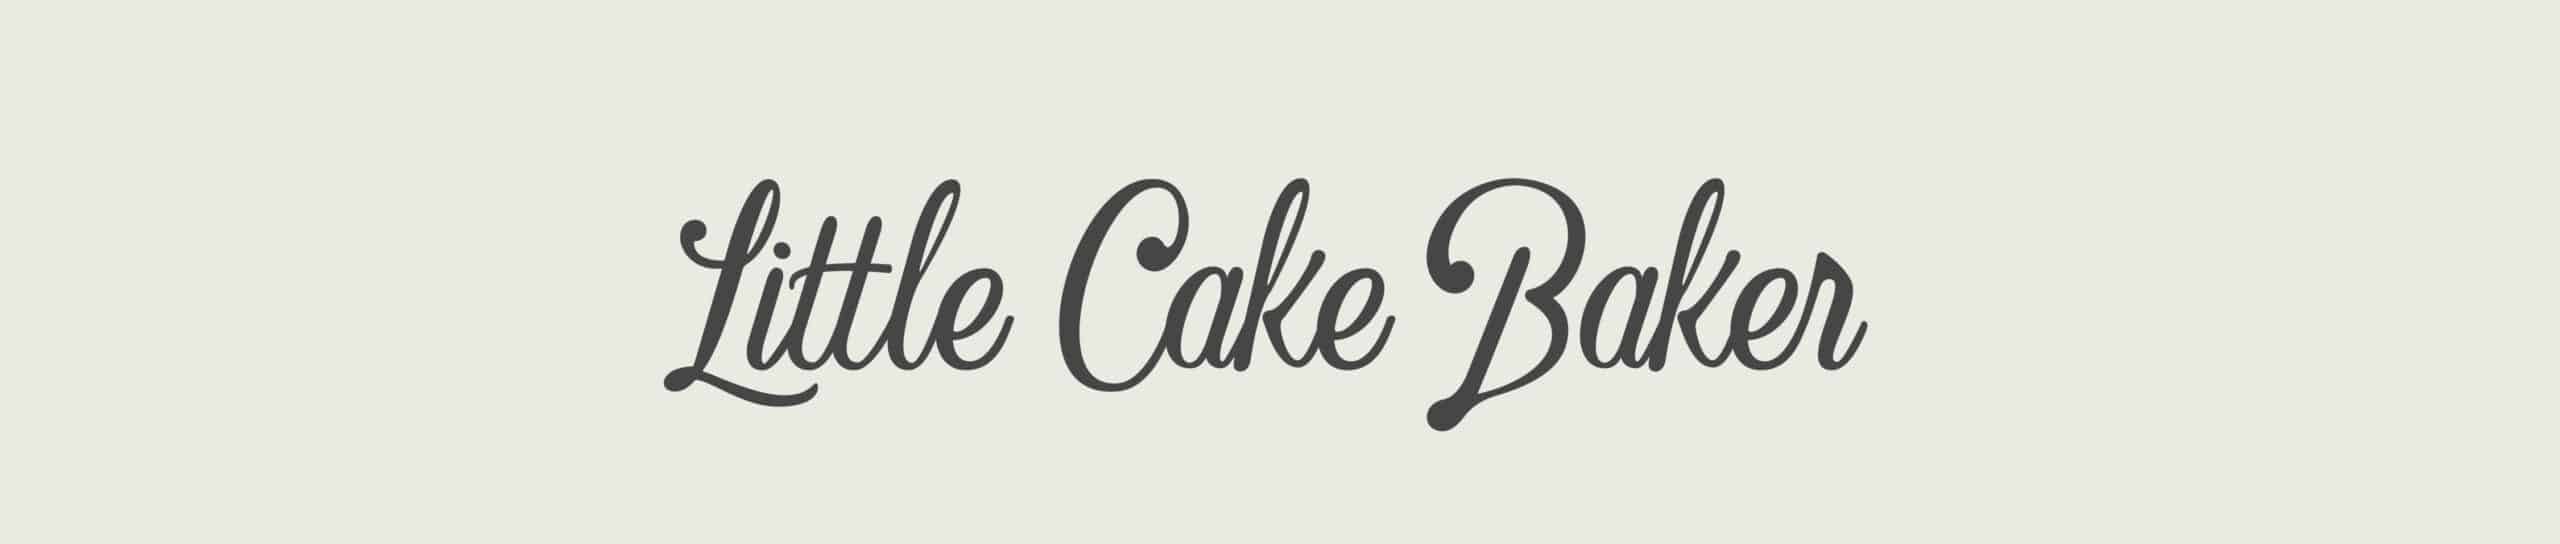 Little_Cake_Baker_Branding_By_Stellen_Design_Wordmark